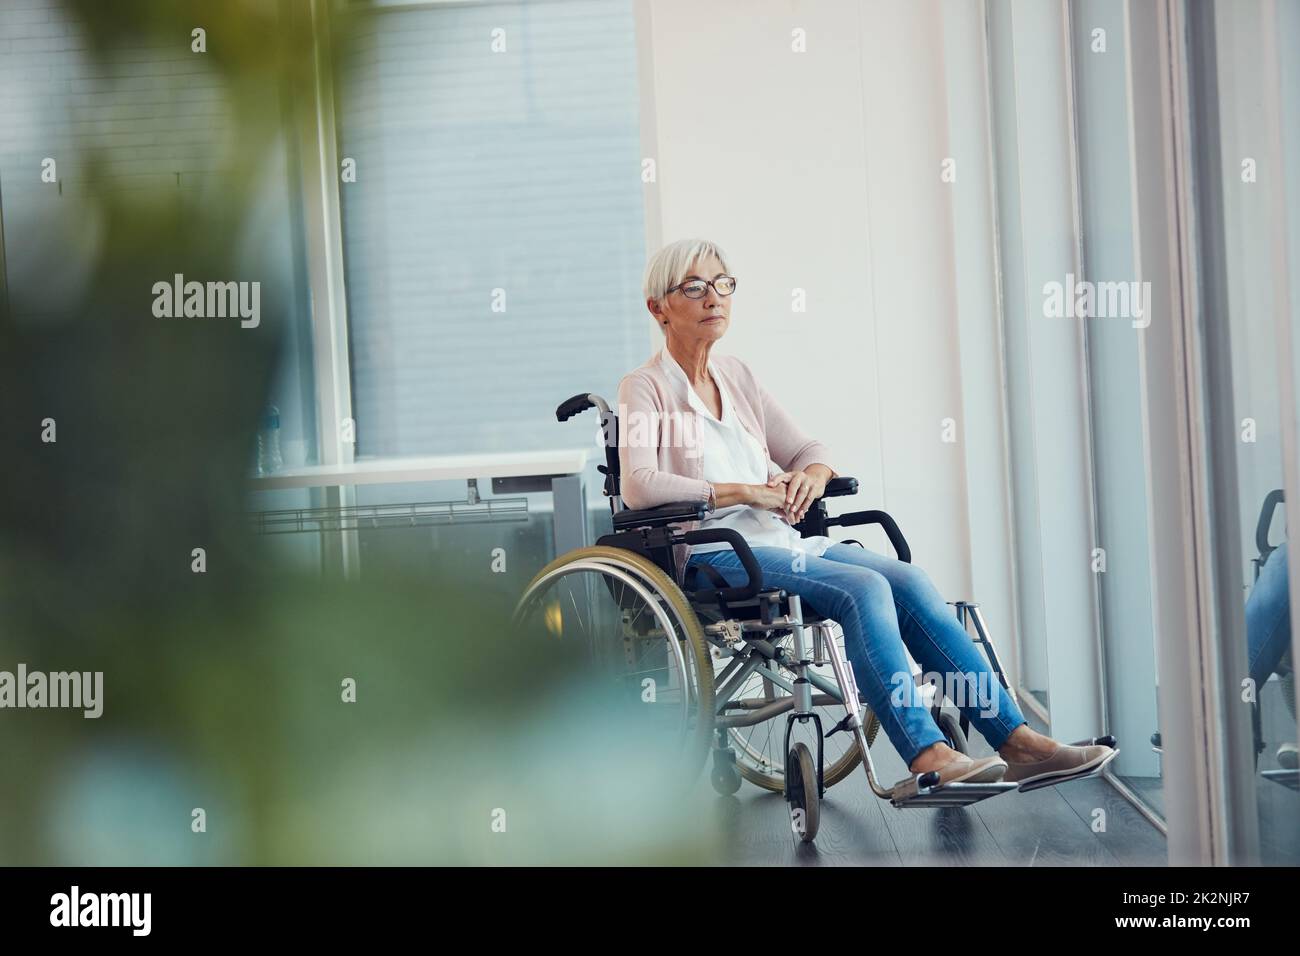 Wer wusste, dass itd so enden würde. In voller Länge eine ältere Frau, die nachdenklich aussieht, während sie in ihrem Rollstuhl in einem Altersheim sitzt. Stockfoto